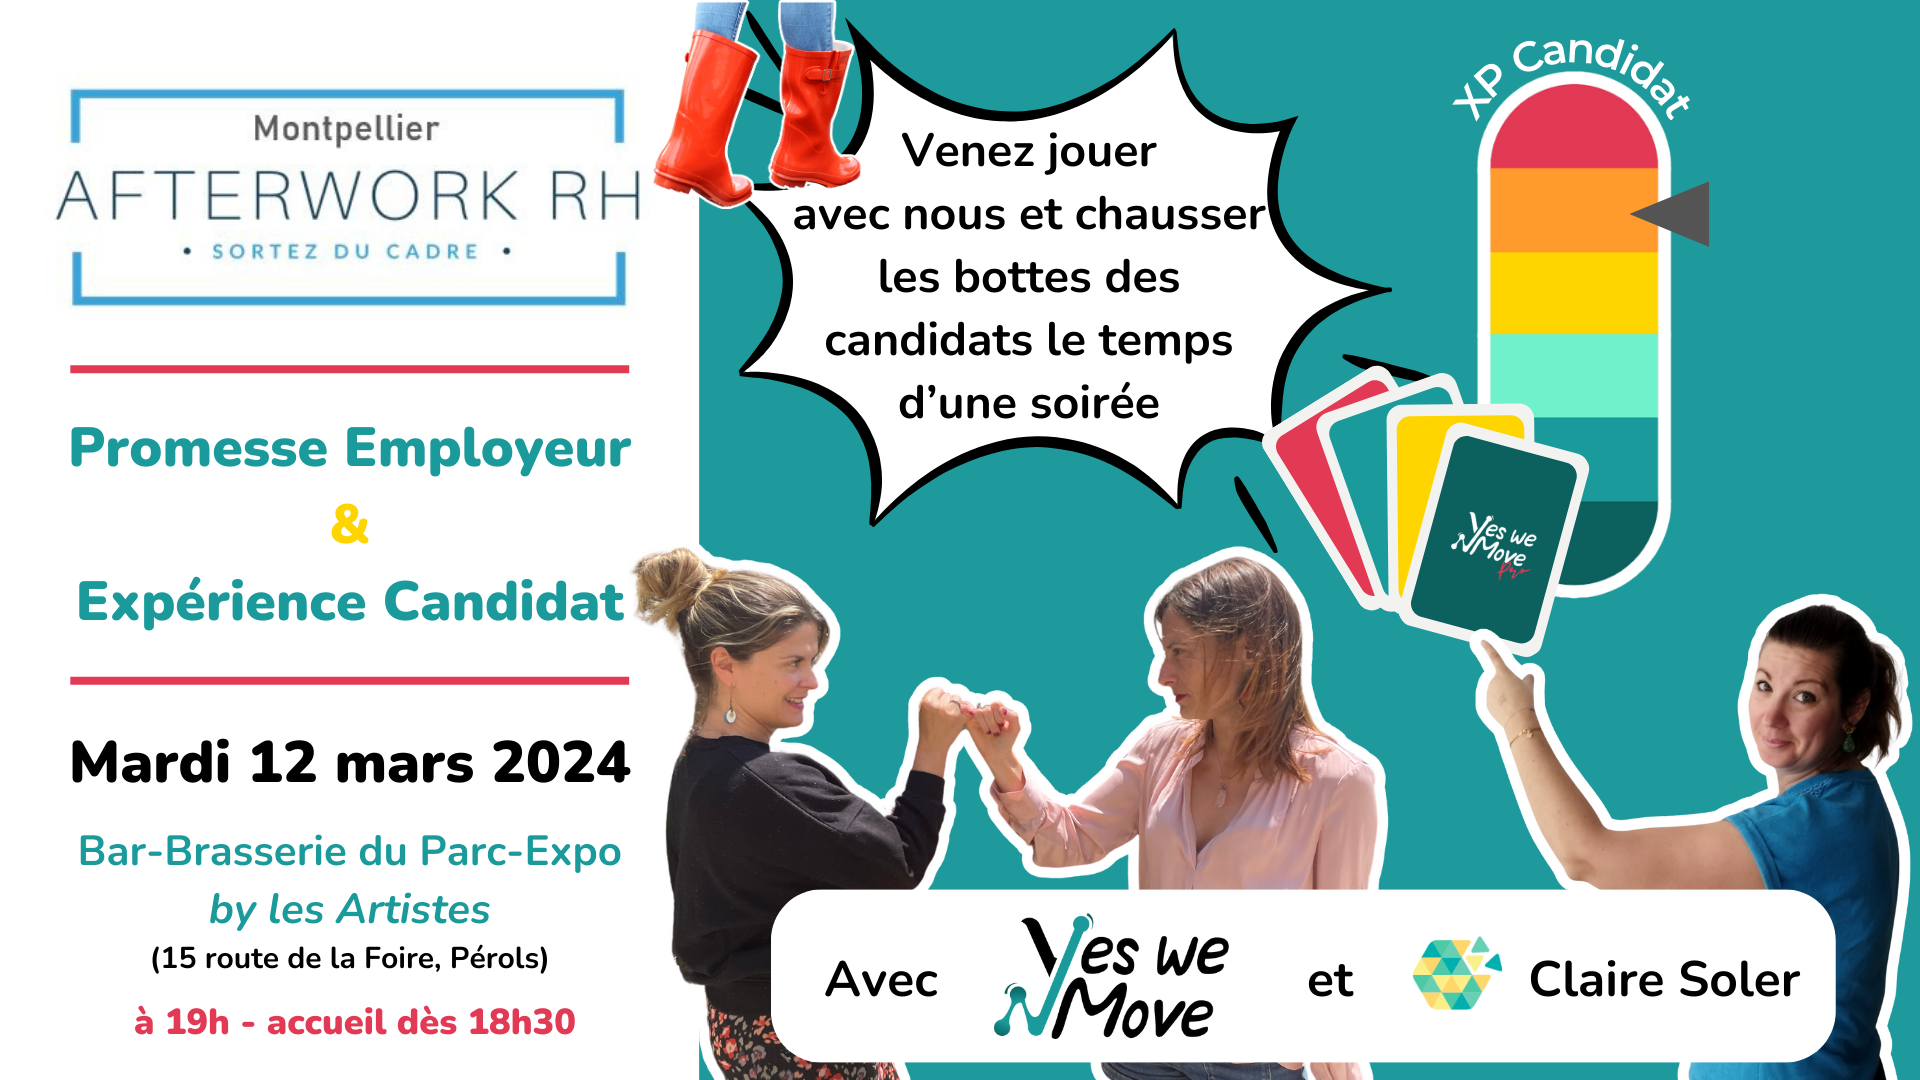 Visuel AWRH Montpellier - mars 2024 - promesse employeur et expérience candidat